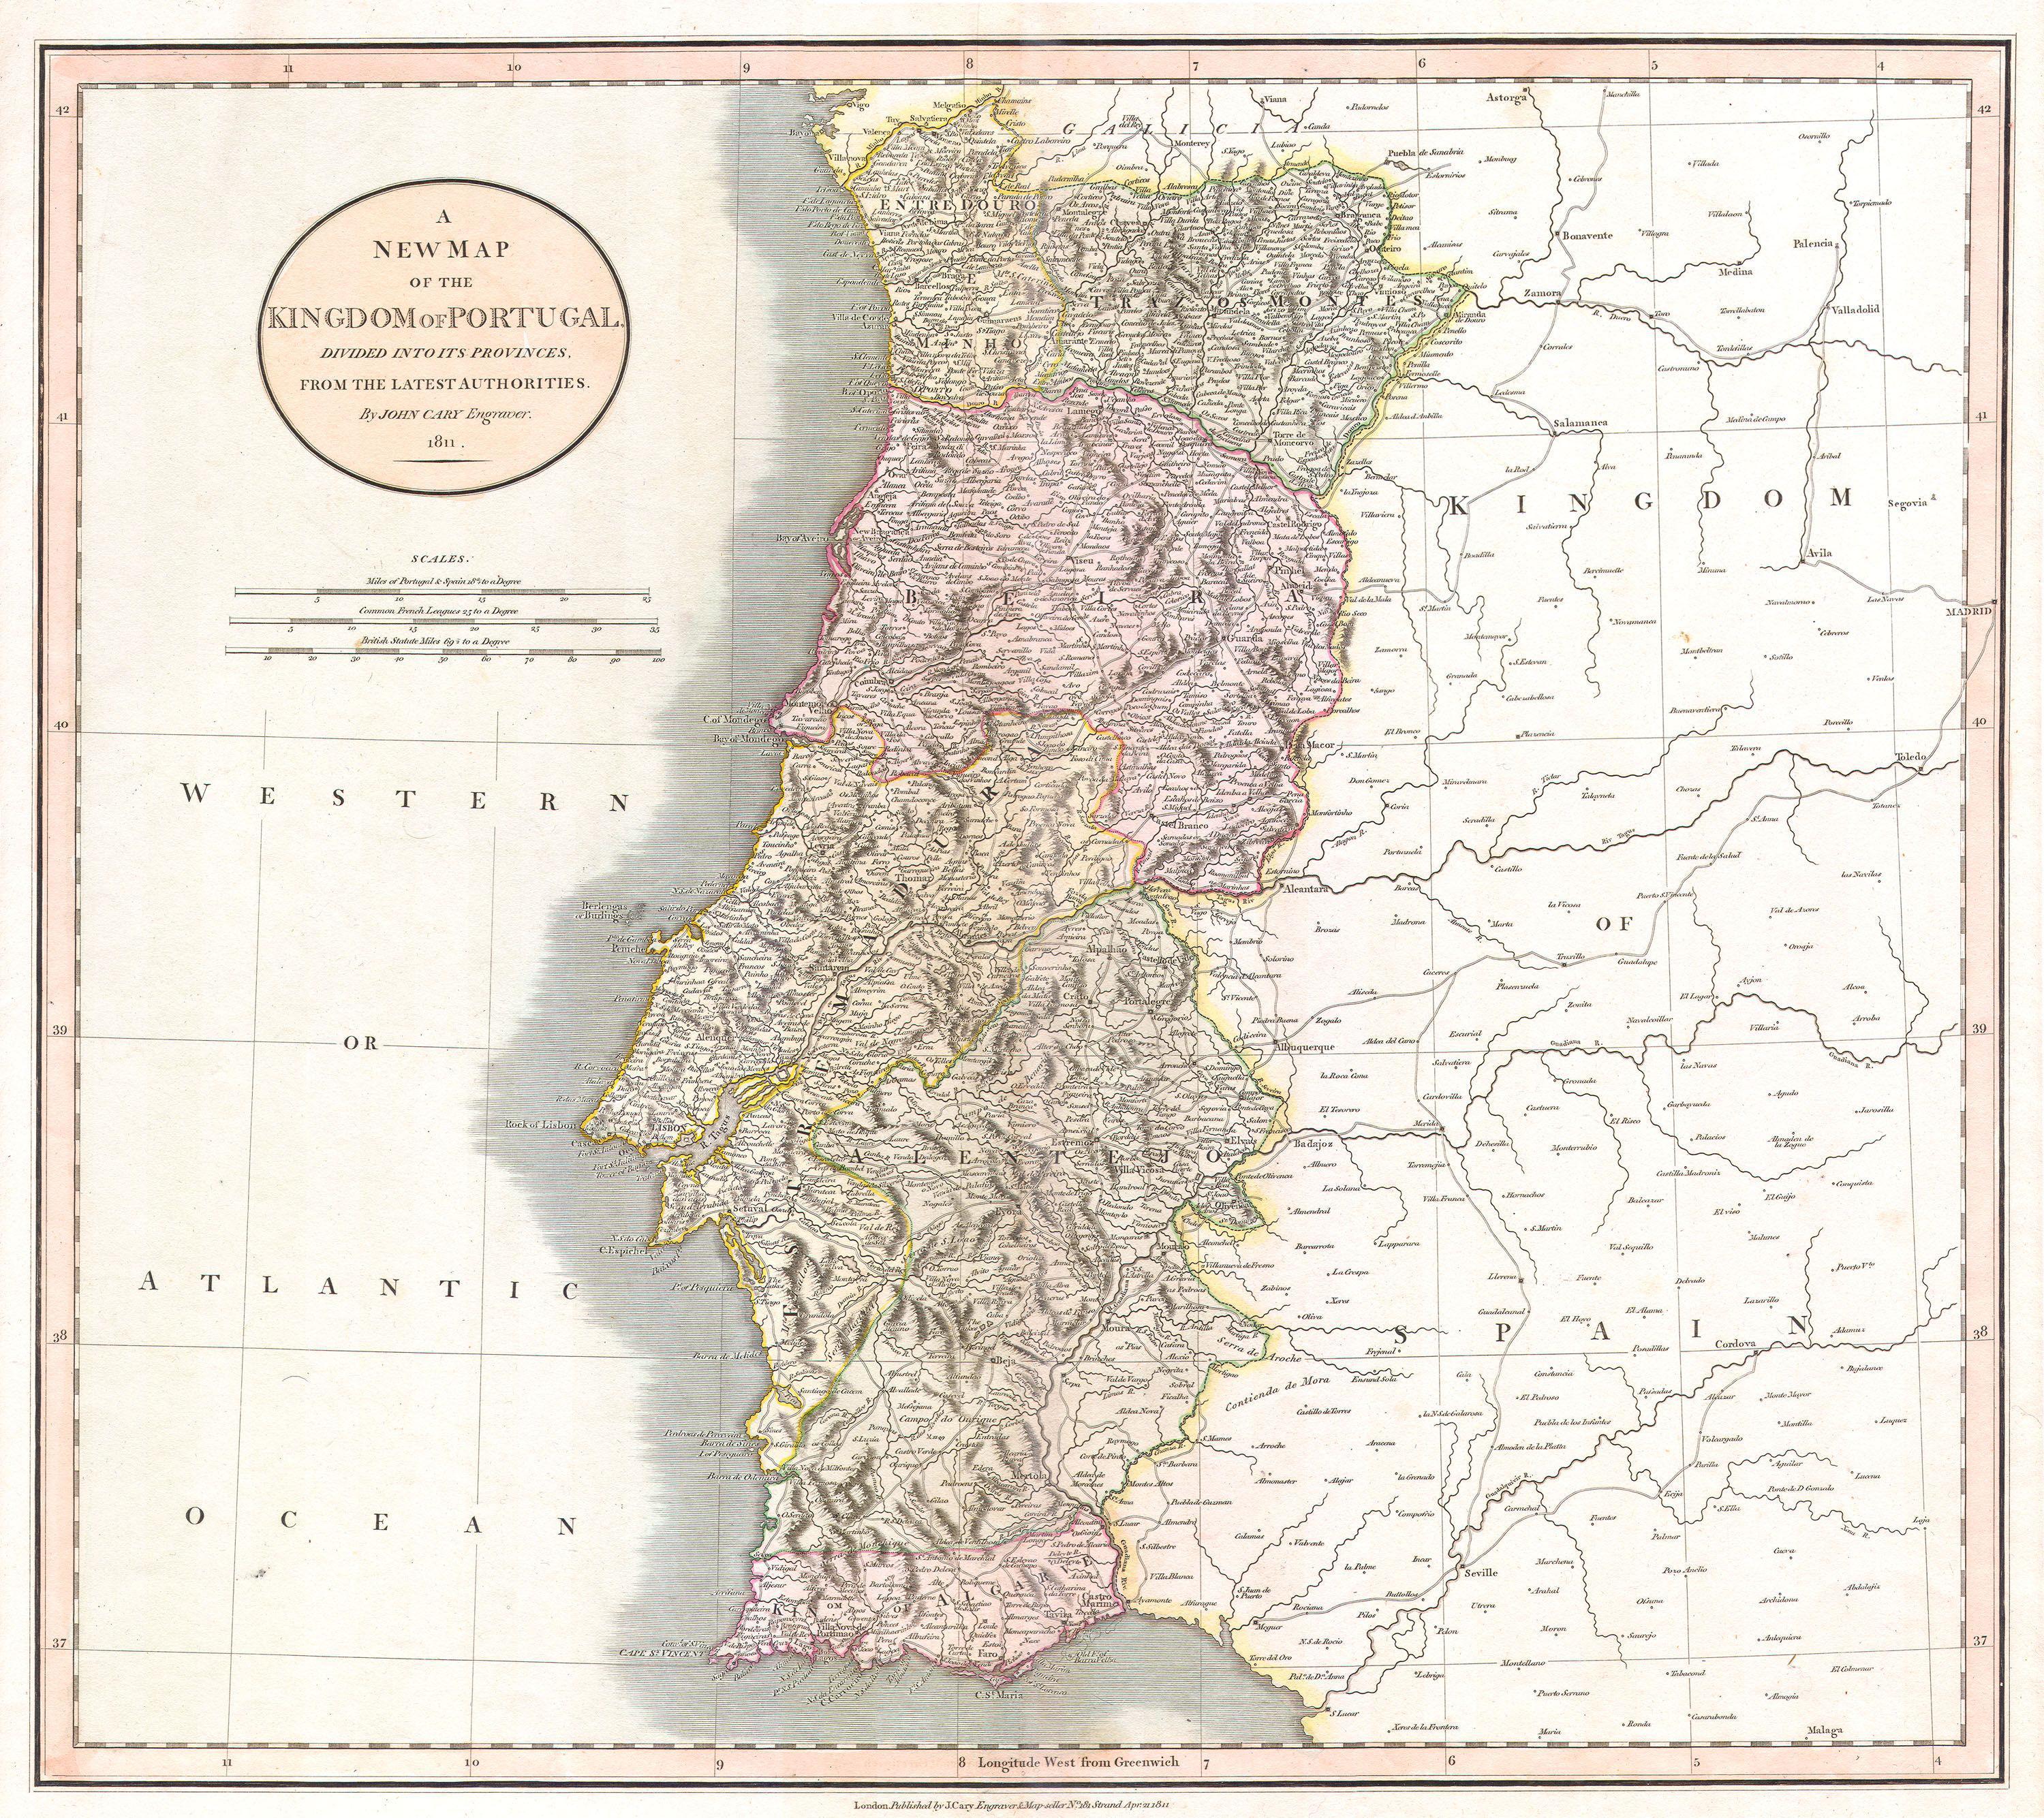 Mapa antiguo de portugal fotografías e imágenes de alta resolución - Alamy